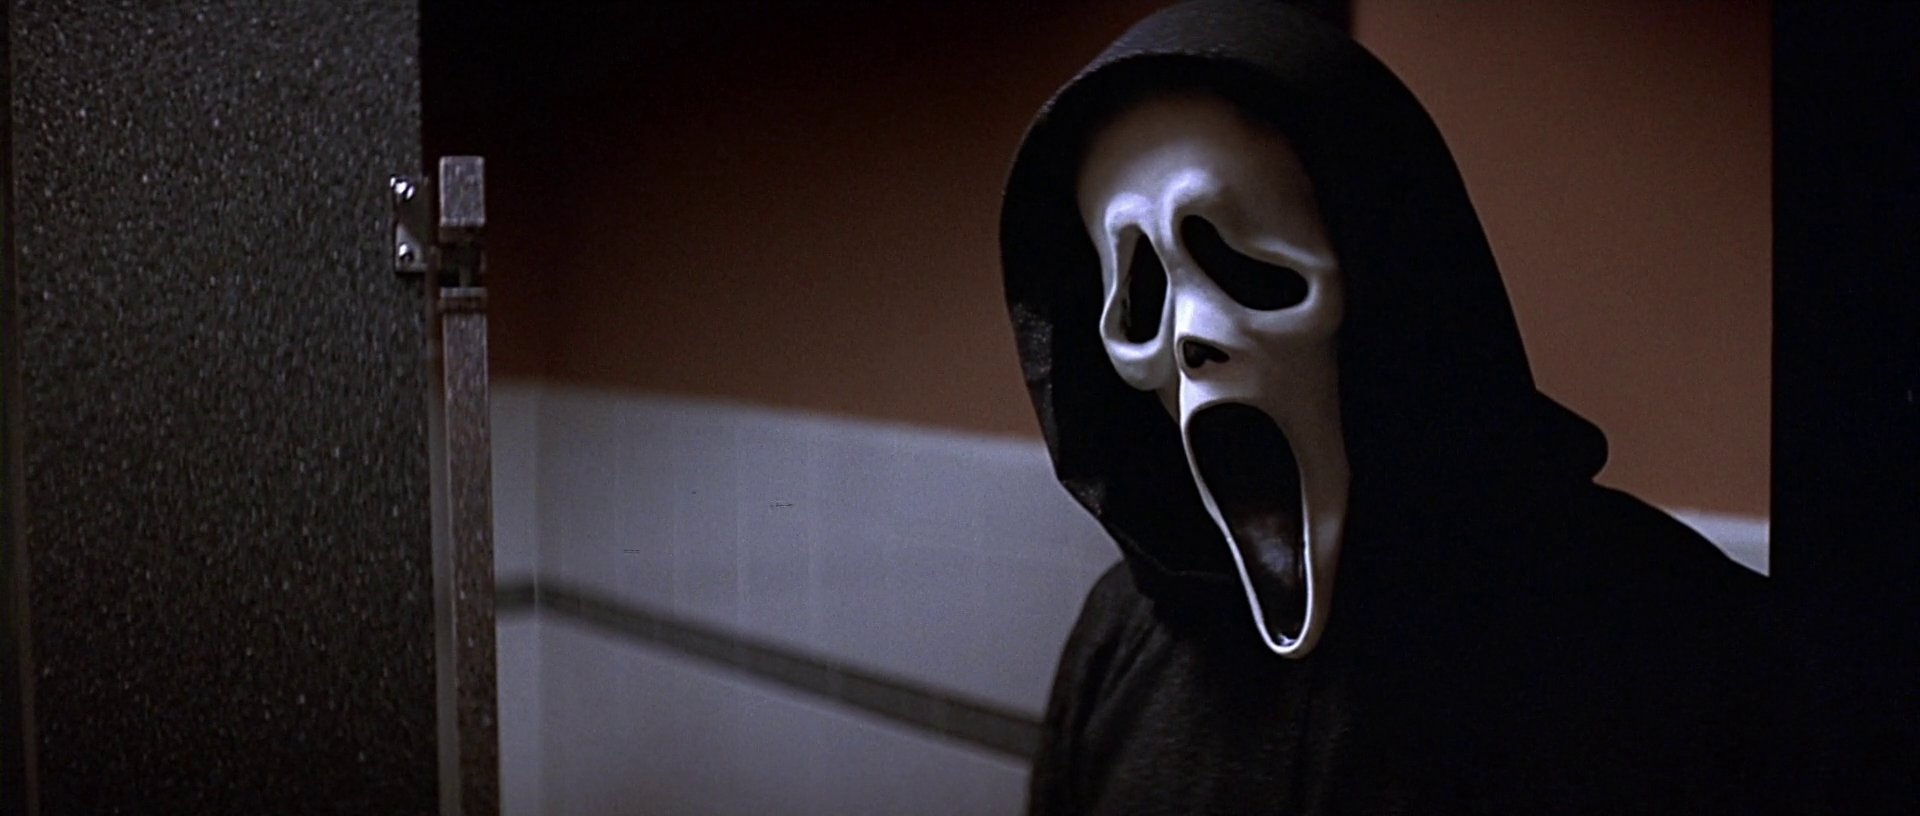 Ужасы про маску. Крик 1996 призрачное лицо.